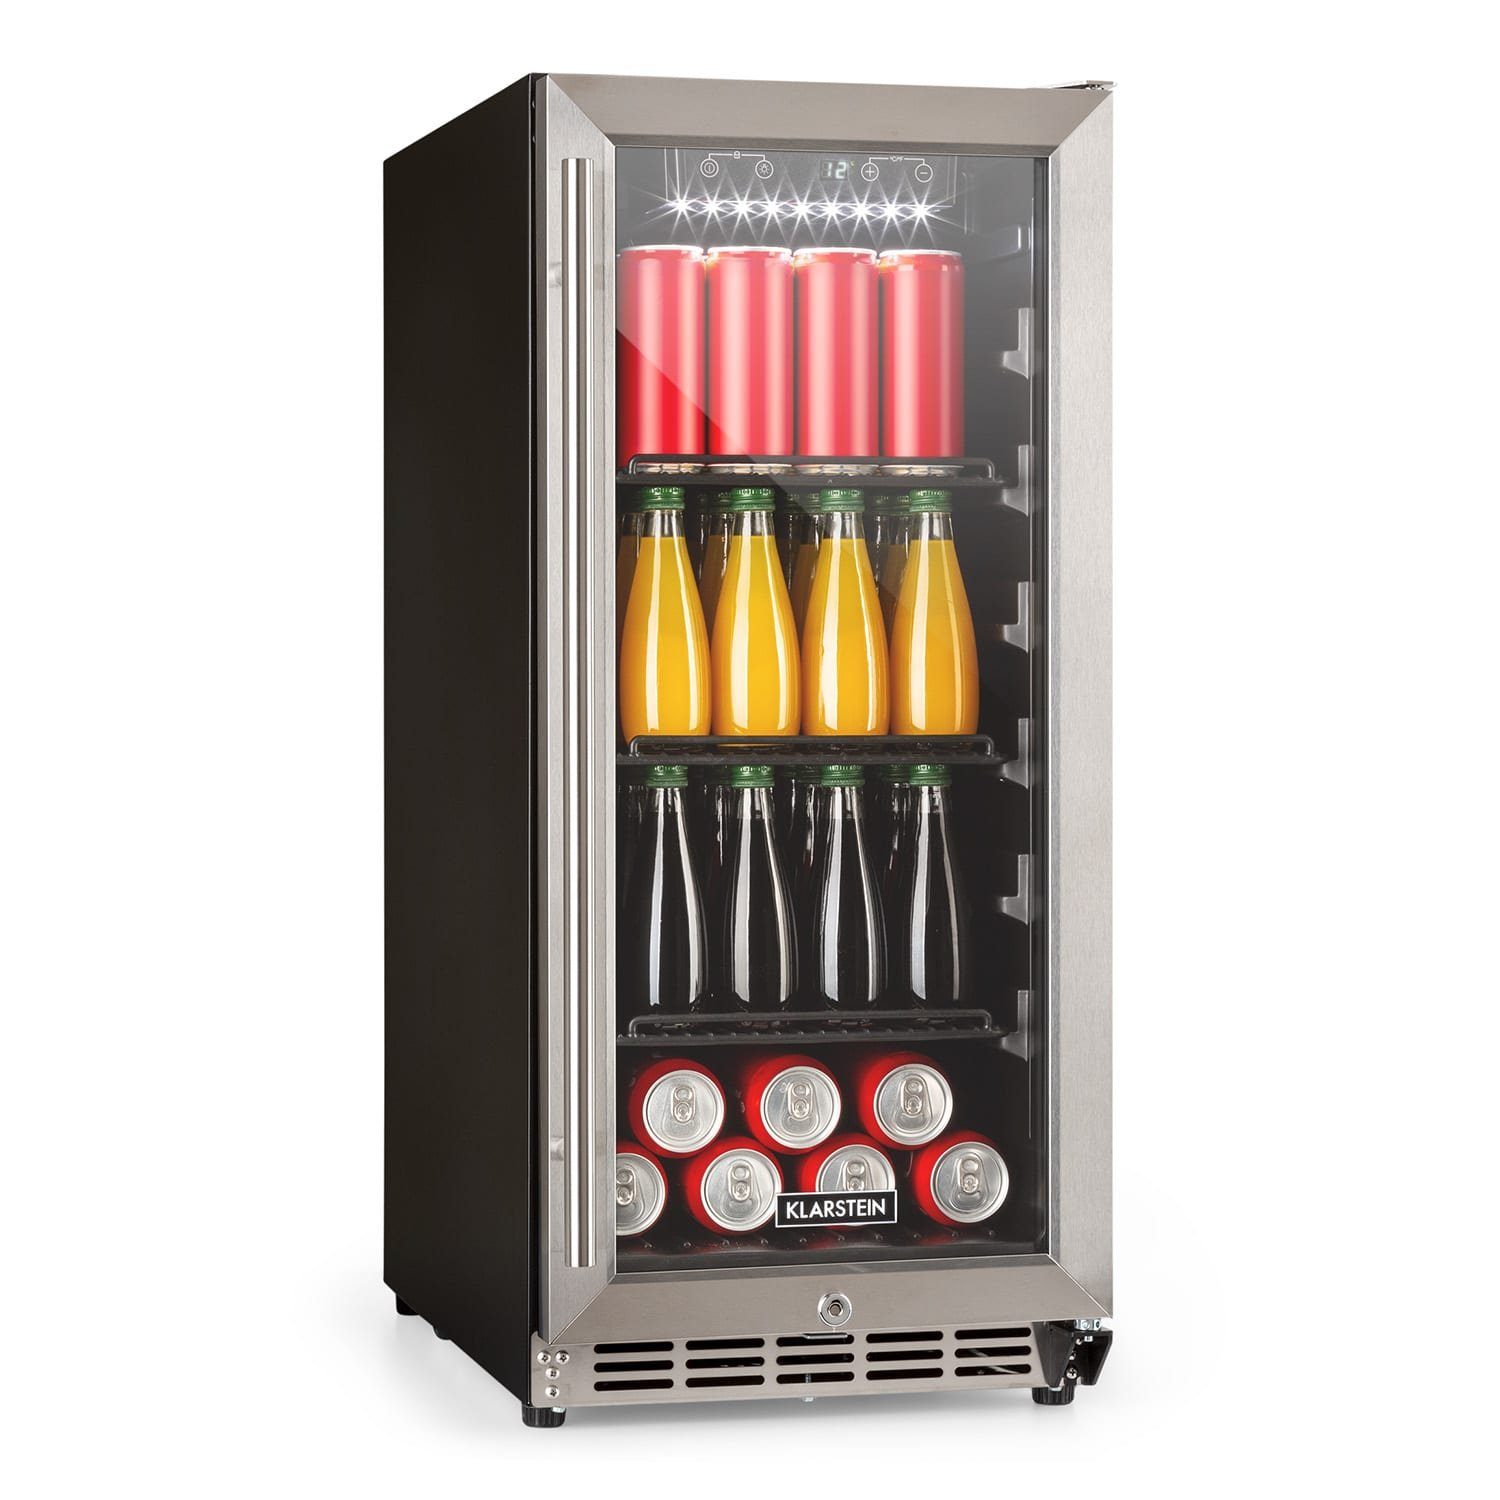 Klarstein Getränkekühlschrank FreshAir 90 Outdoor-Kühlschrank 4 Etagen IP24  UV-Filter Edelstahl 10035849, 86 cm hoch, 38 cm breit